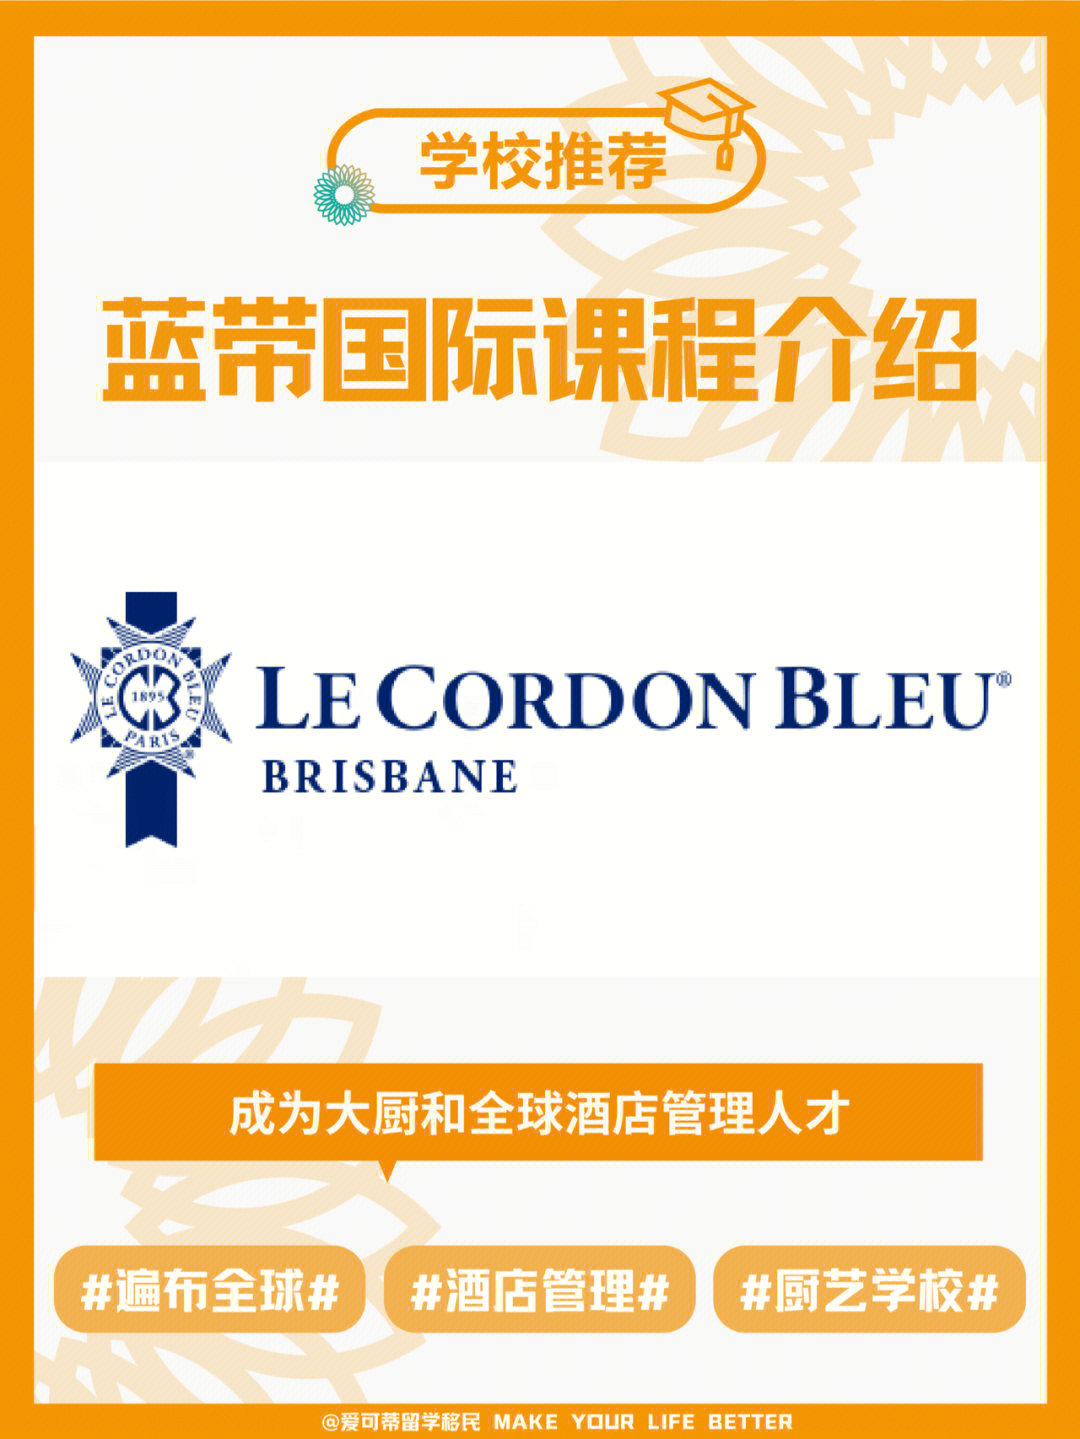 蓝带国际学院上海校区图片